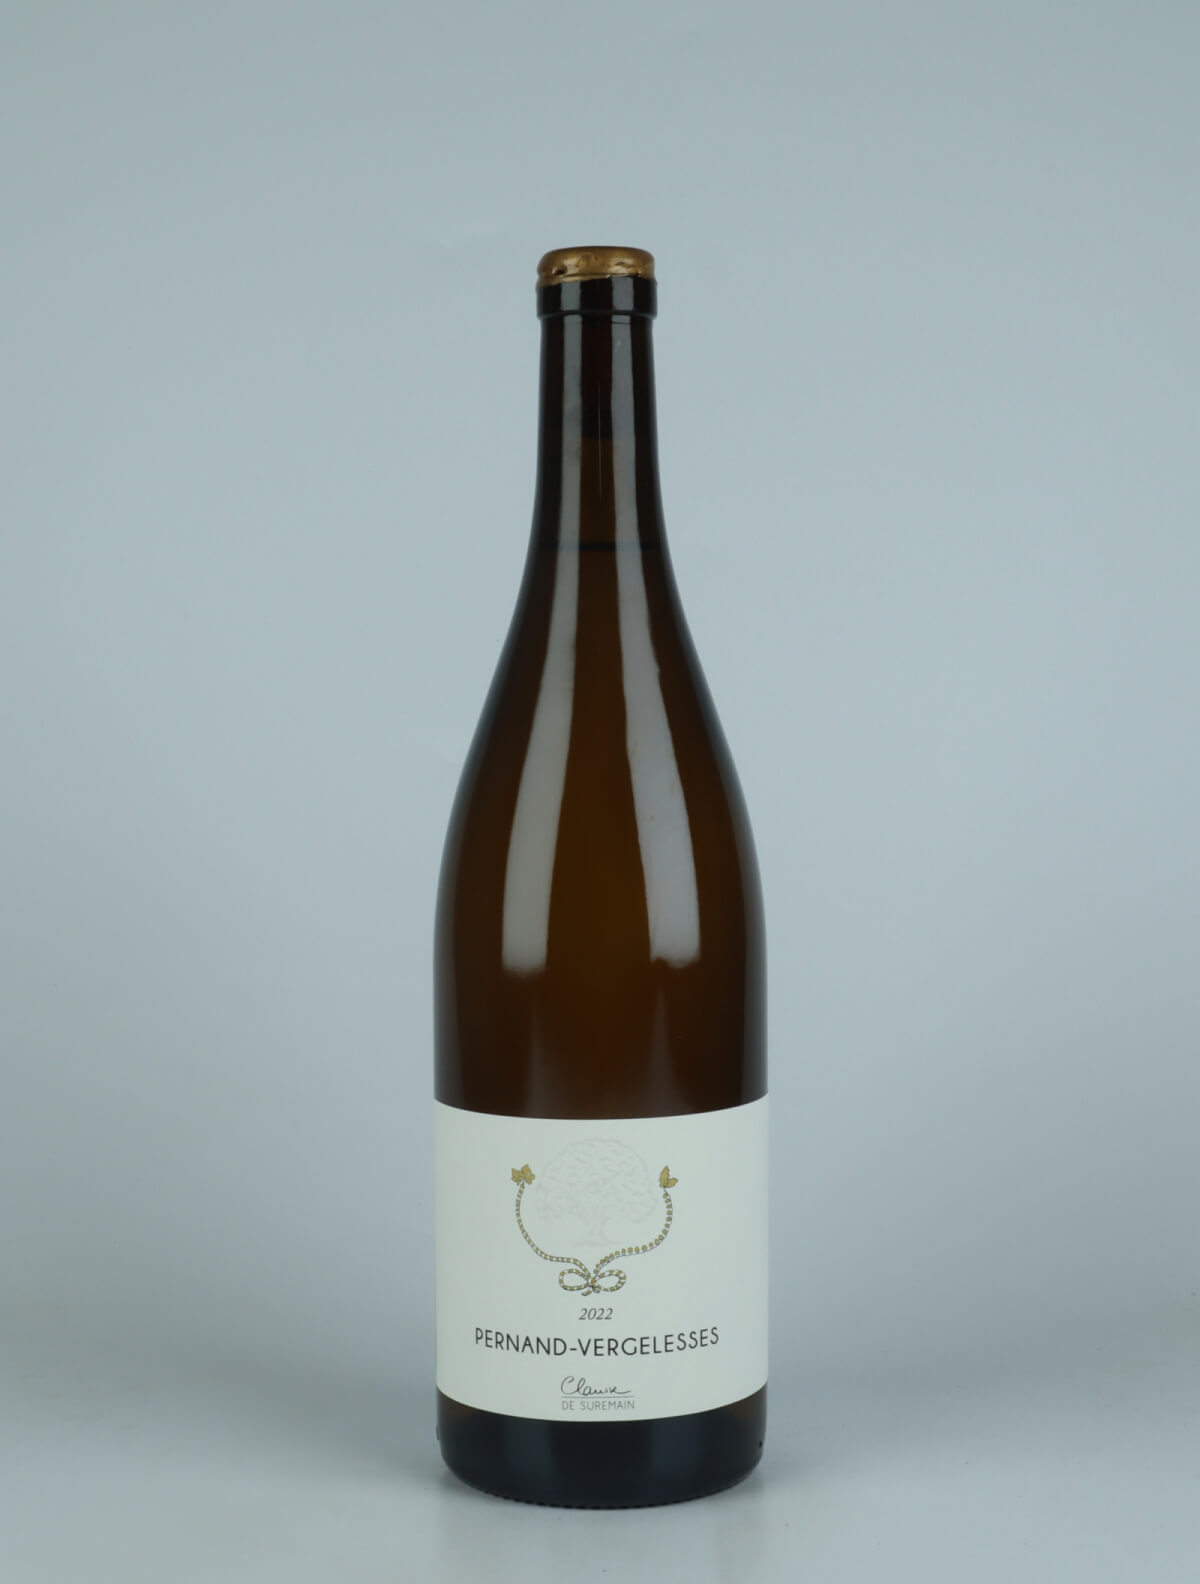 En flaske 2022 Pernand-Vergelesses Hvidvin fra Clarisse de Suremain, Bourgogne i Frankrig